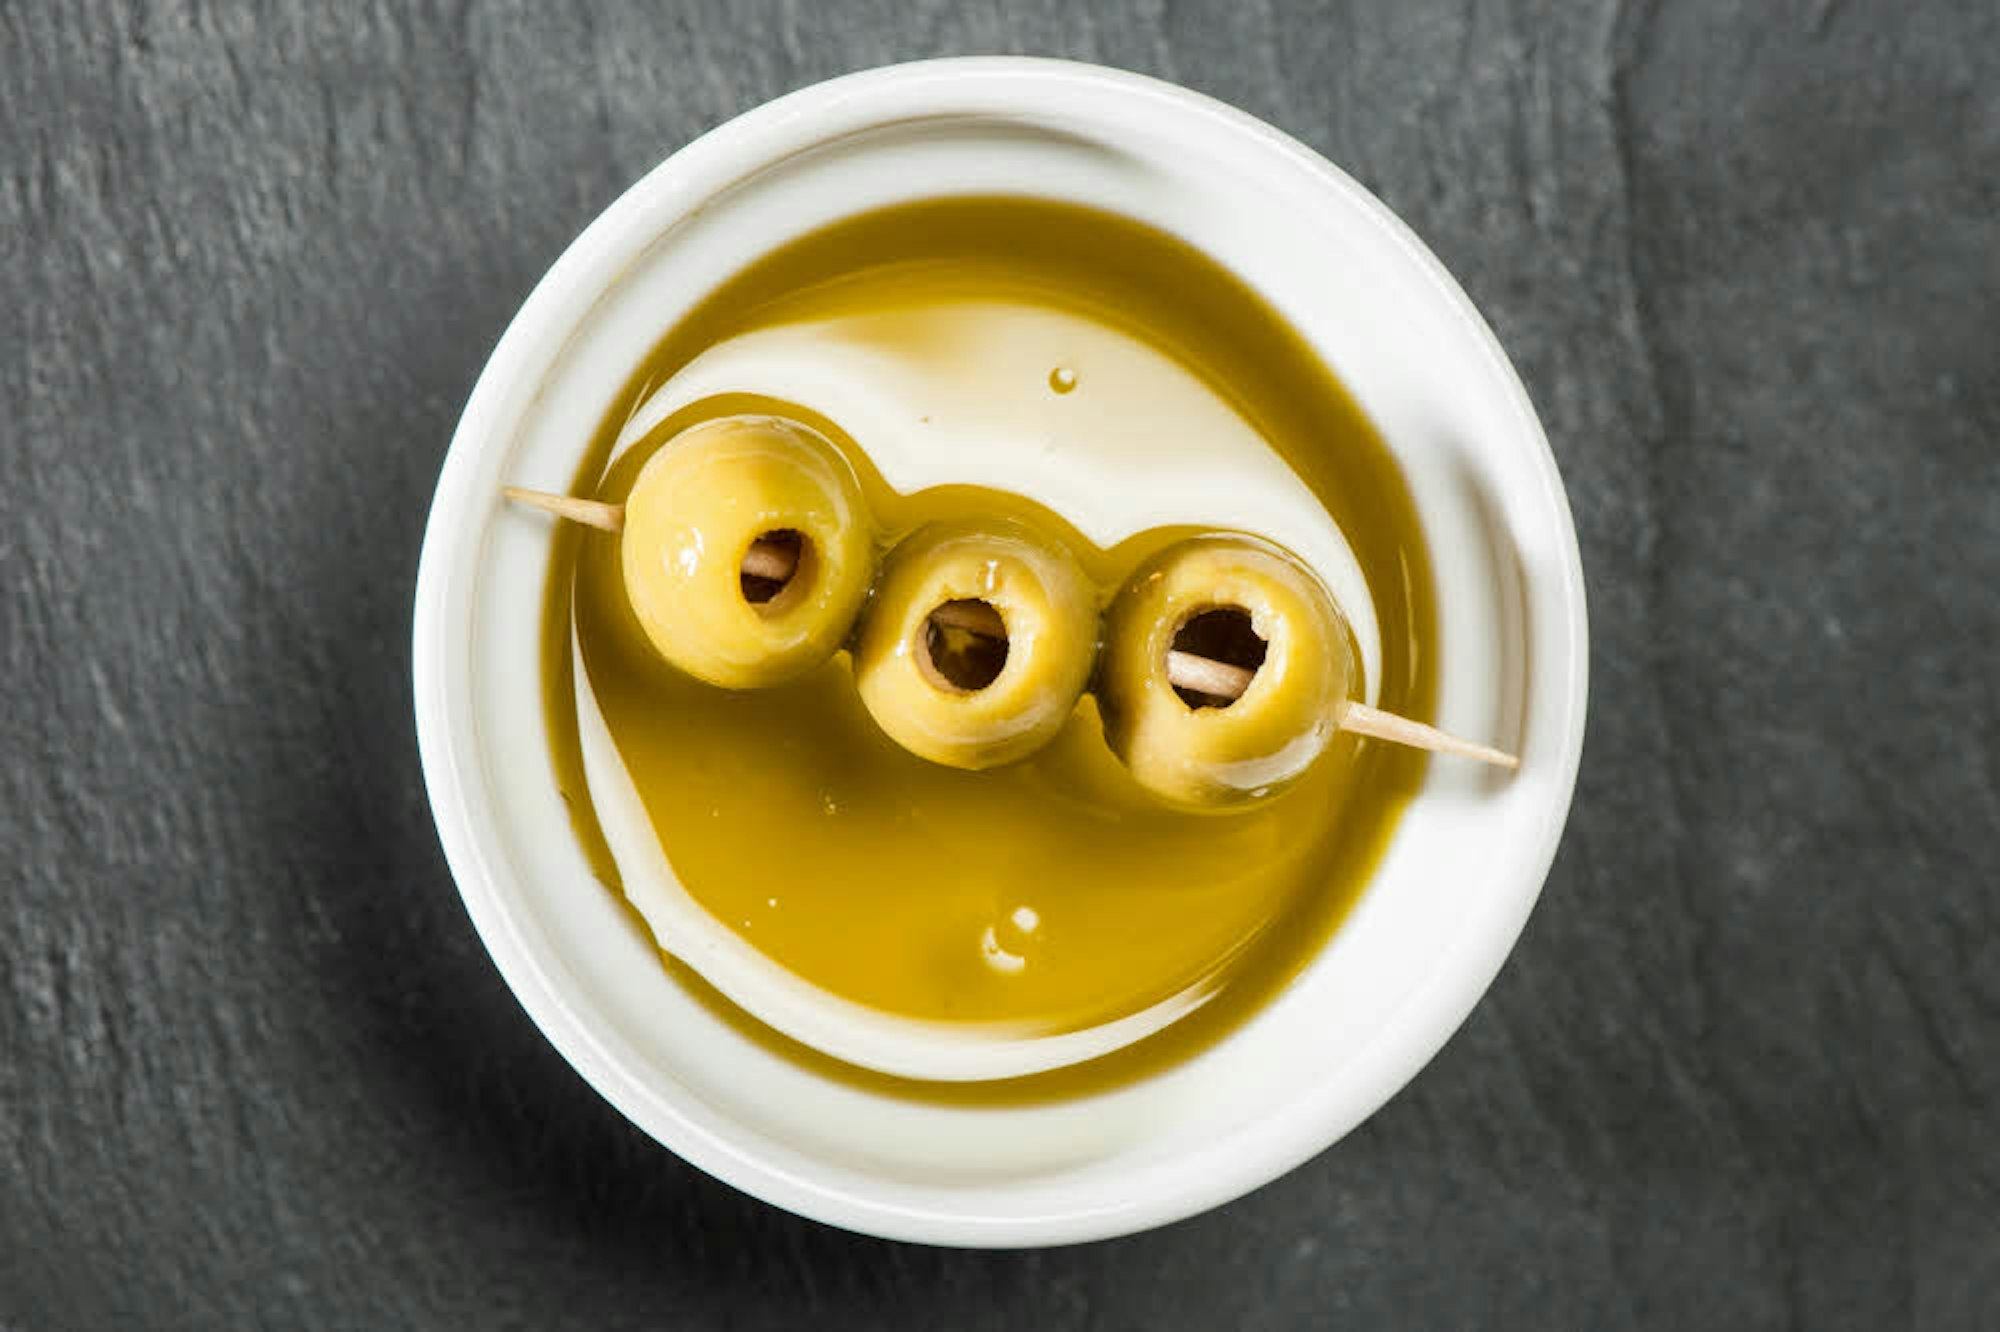 Olivenöl ist nicht nur gesund, sondern auch vielseitig einsatzbar.